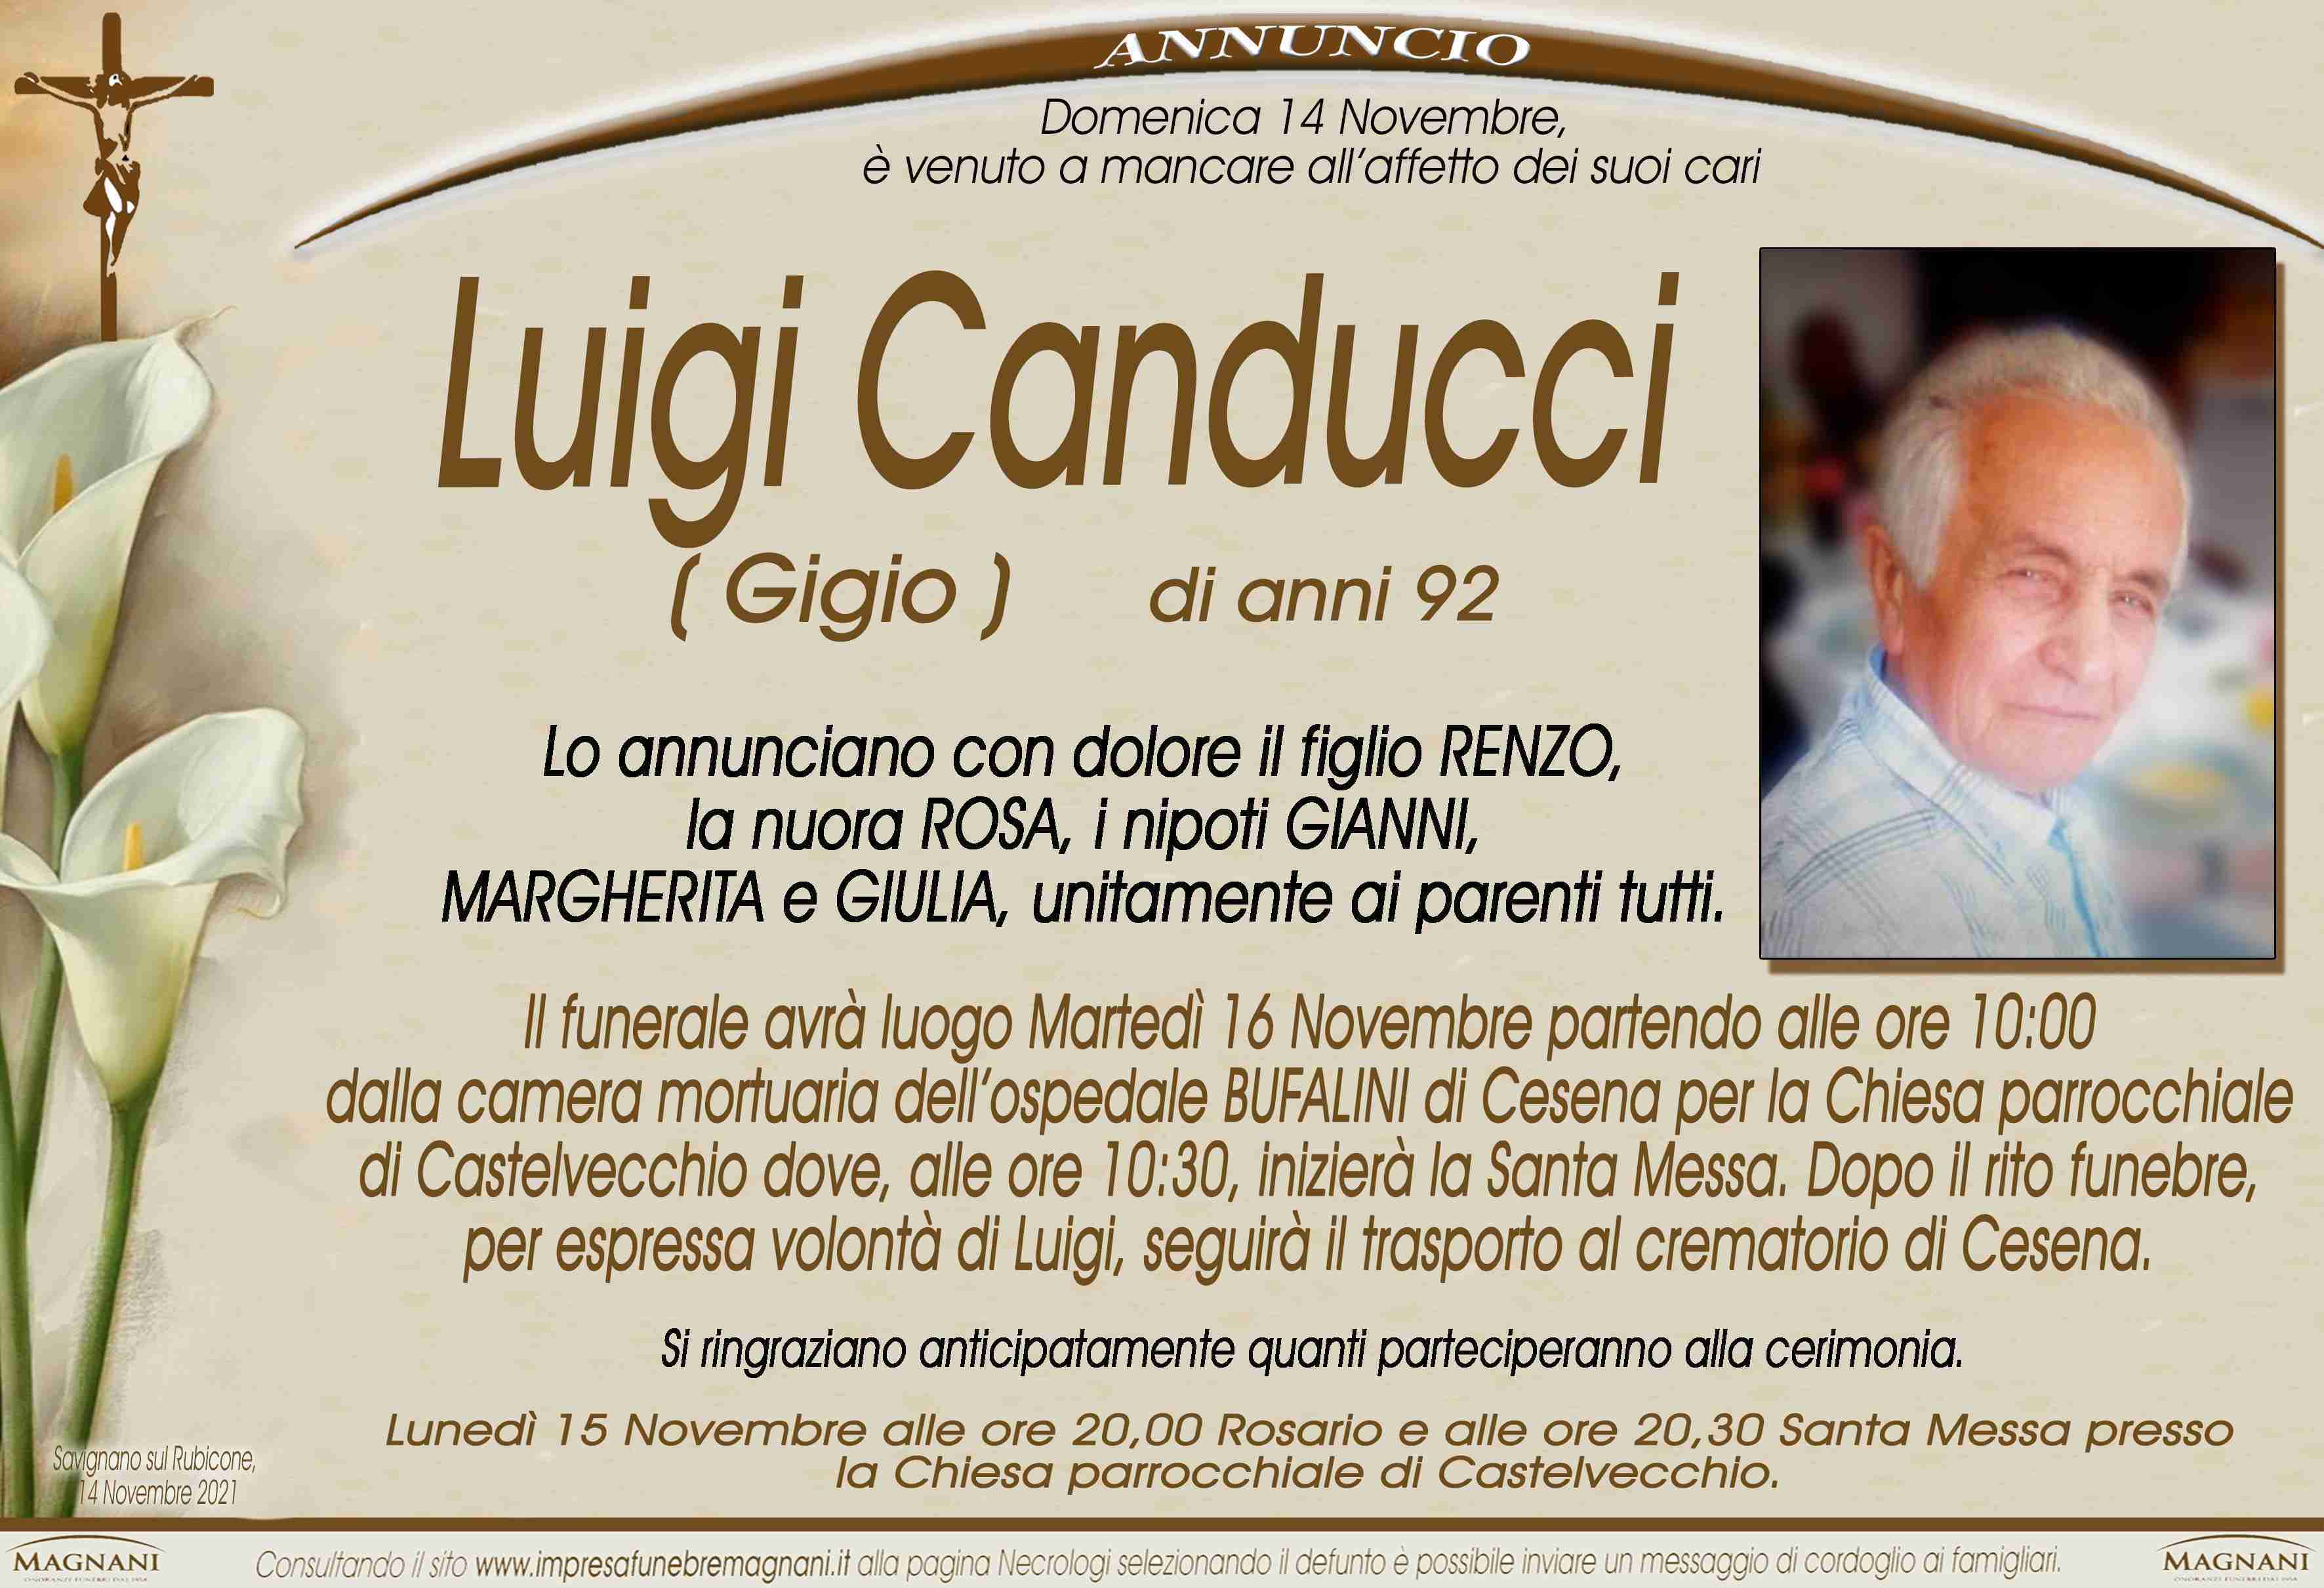 Luigi Canducci